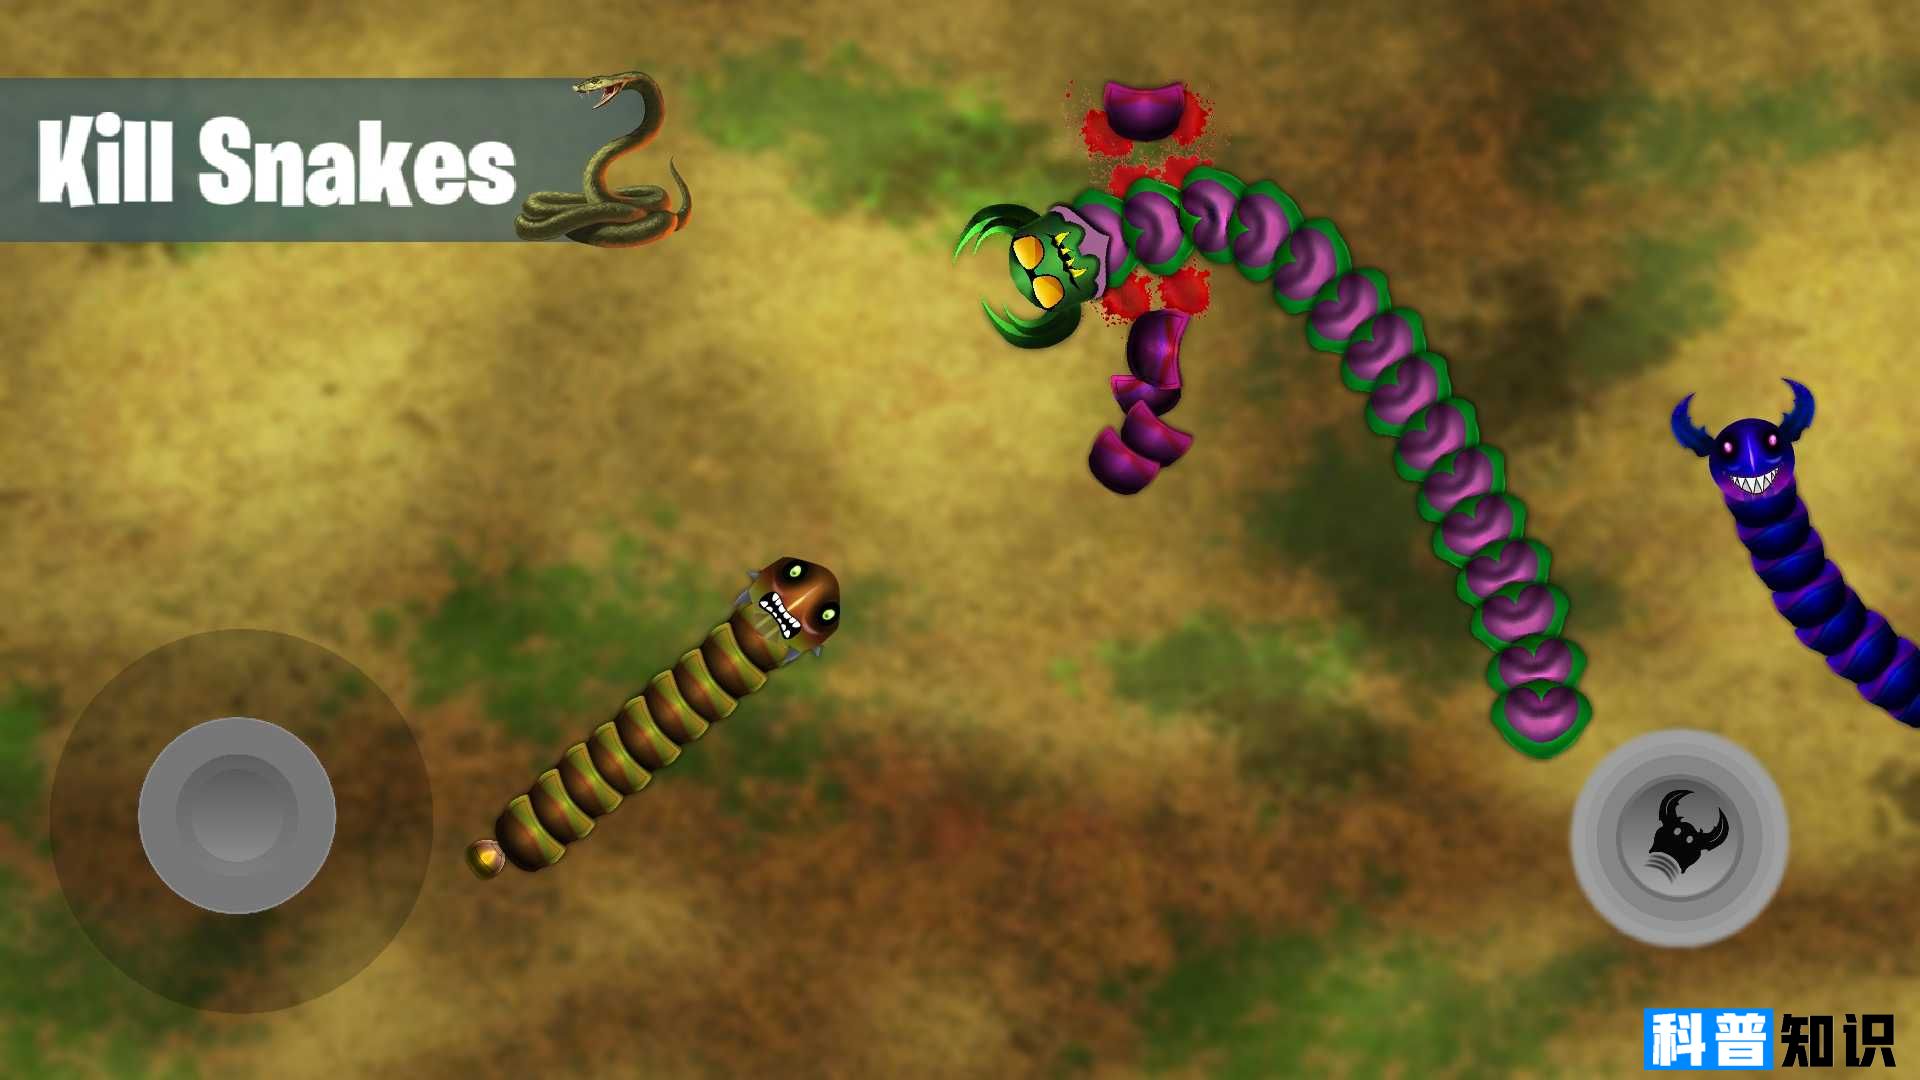 巨型蠕虫蛇